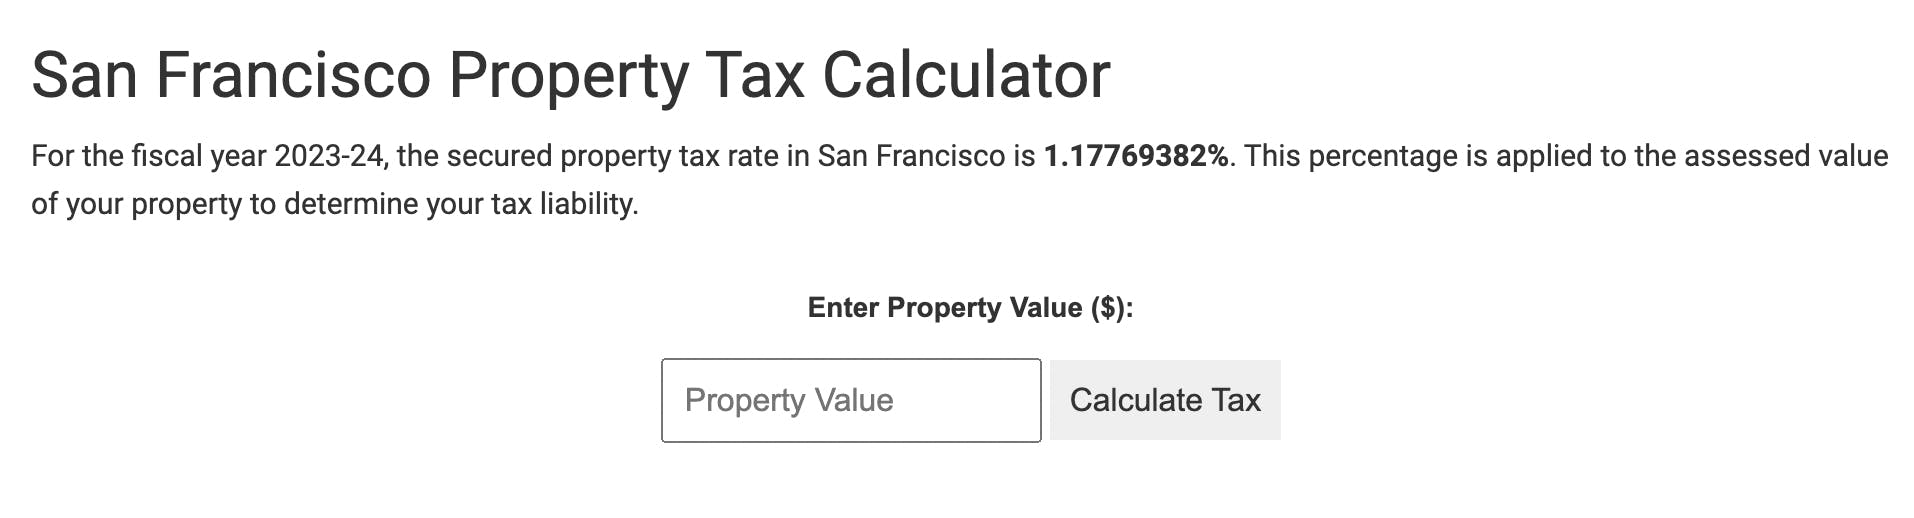 San Francisco Property Tax Calculator media 1